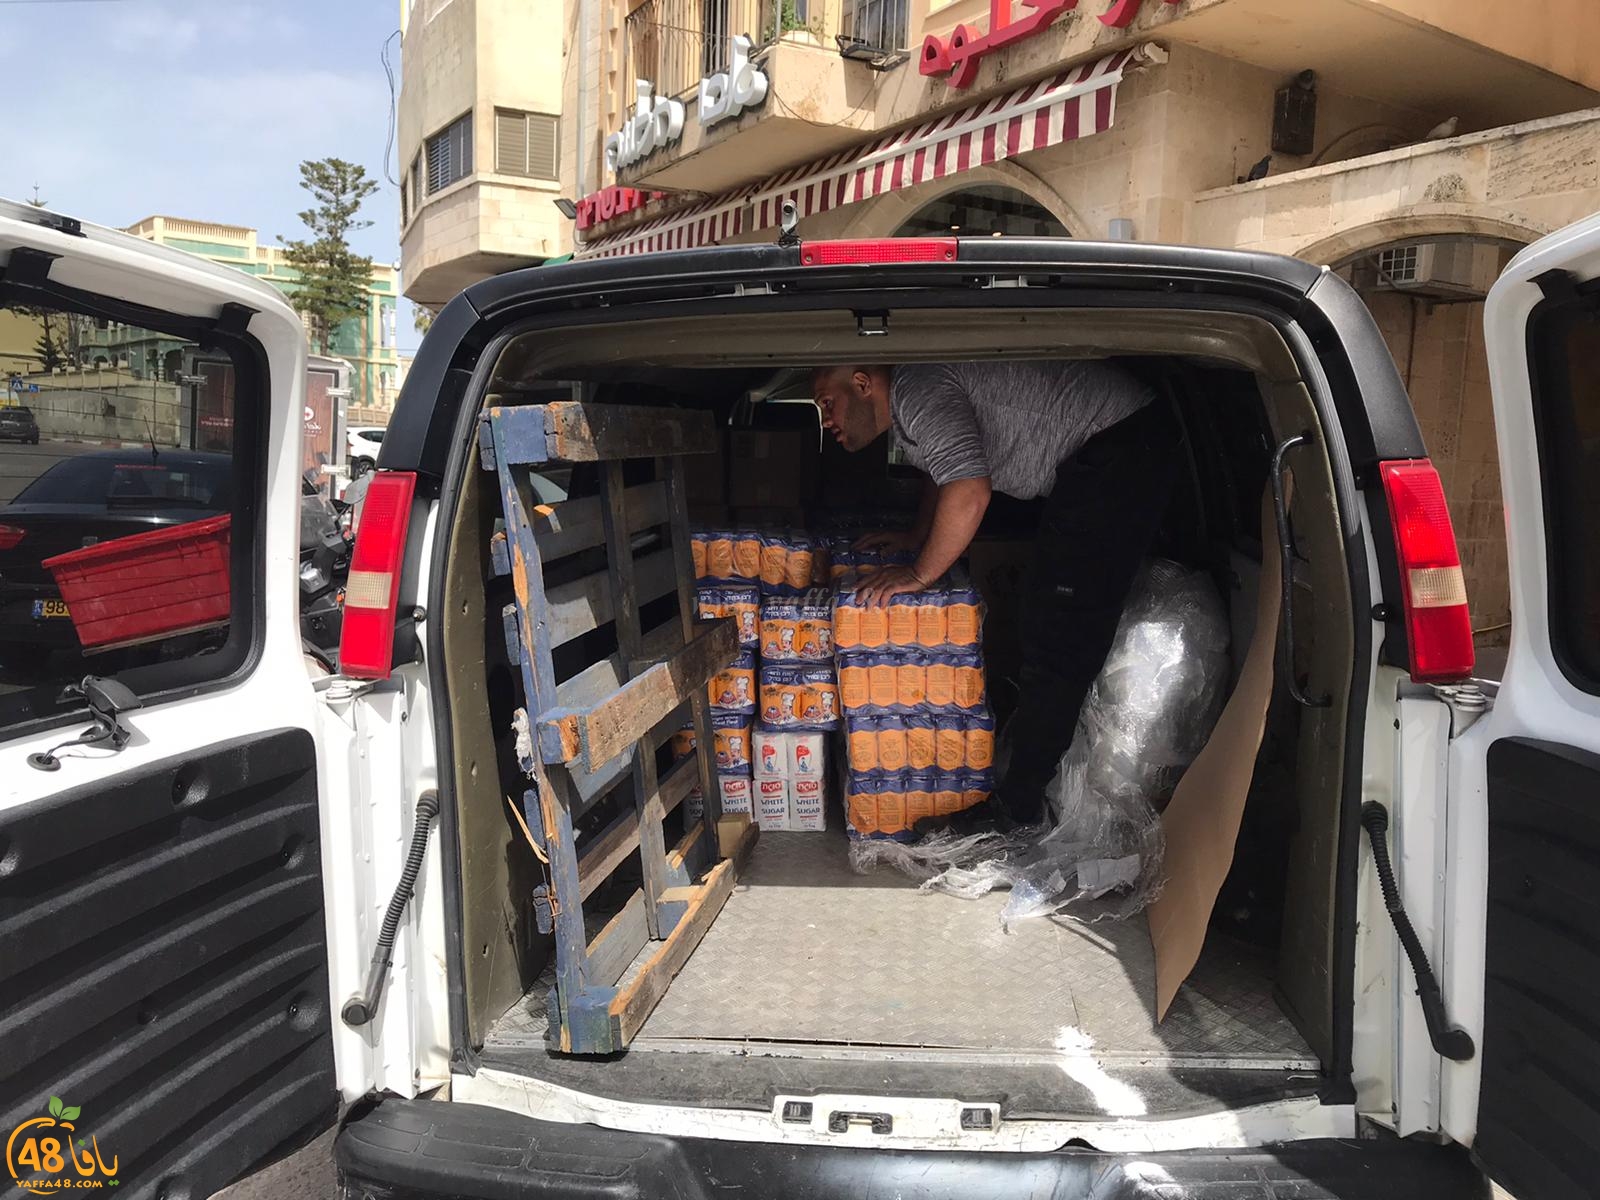 جمعية يافا تستعد للأسوأ باعداد مئات الطرود الغذائية لتوزيعها على العائلات المستورة بيافا 